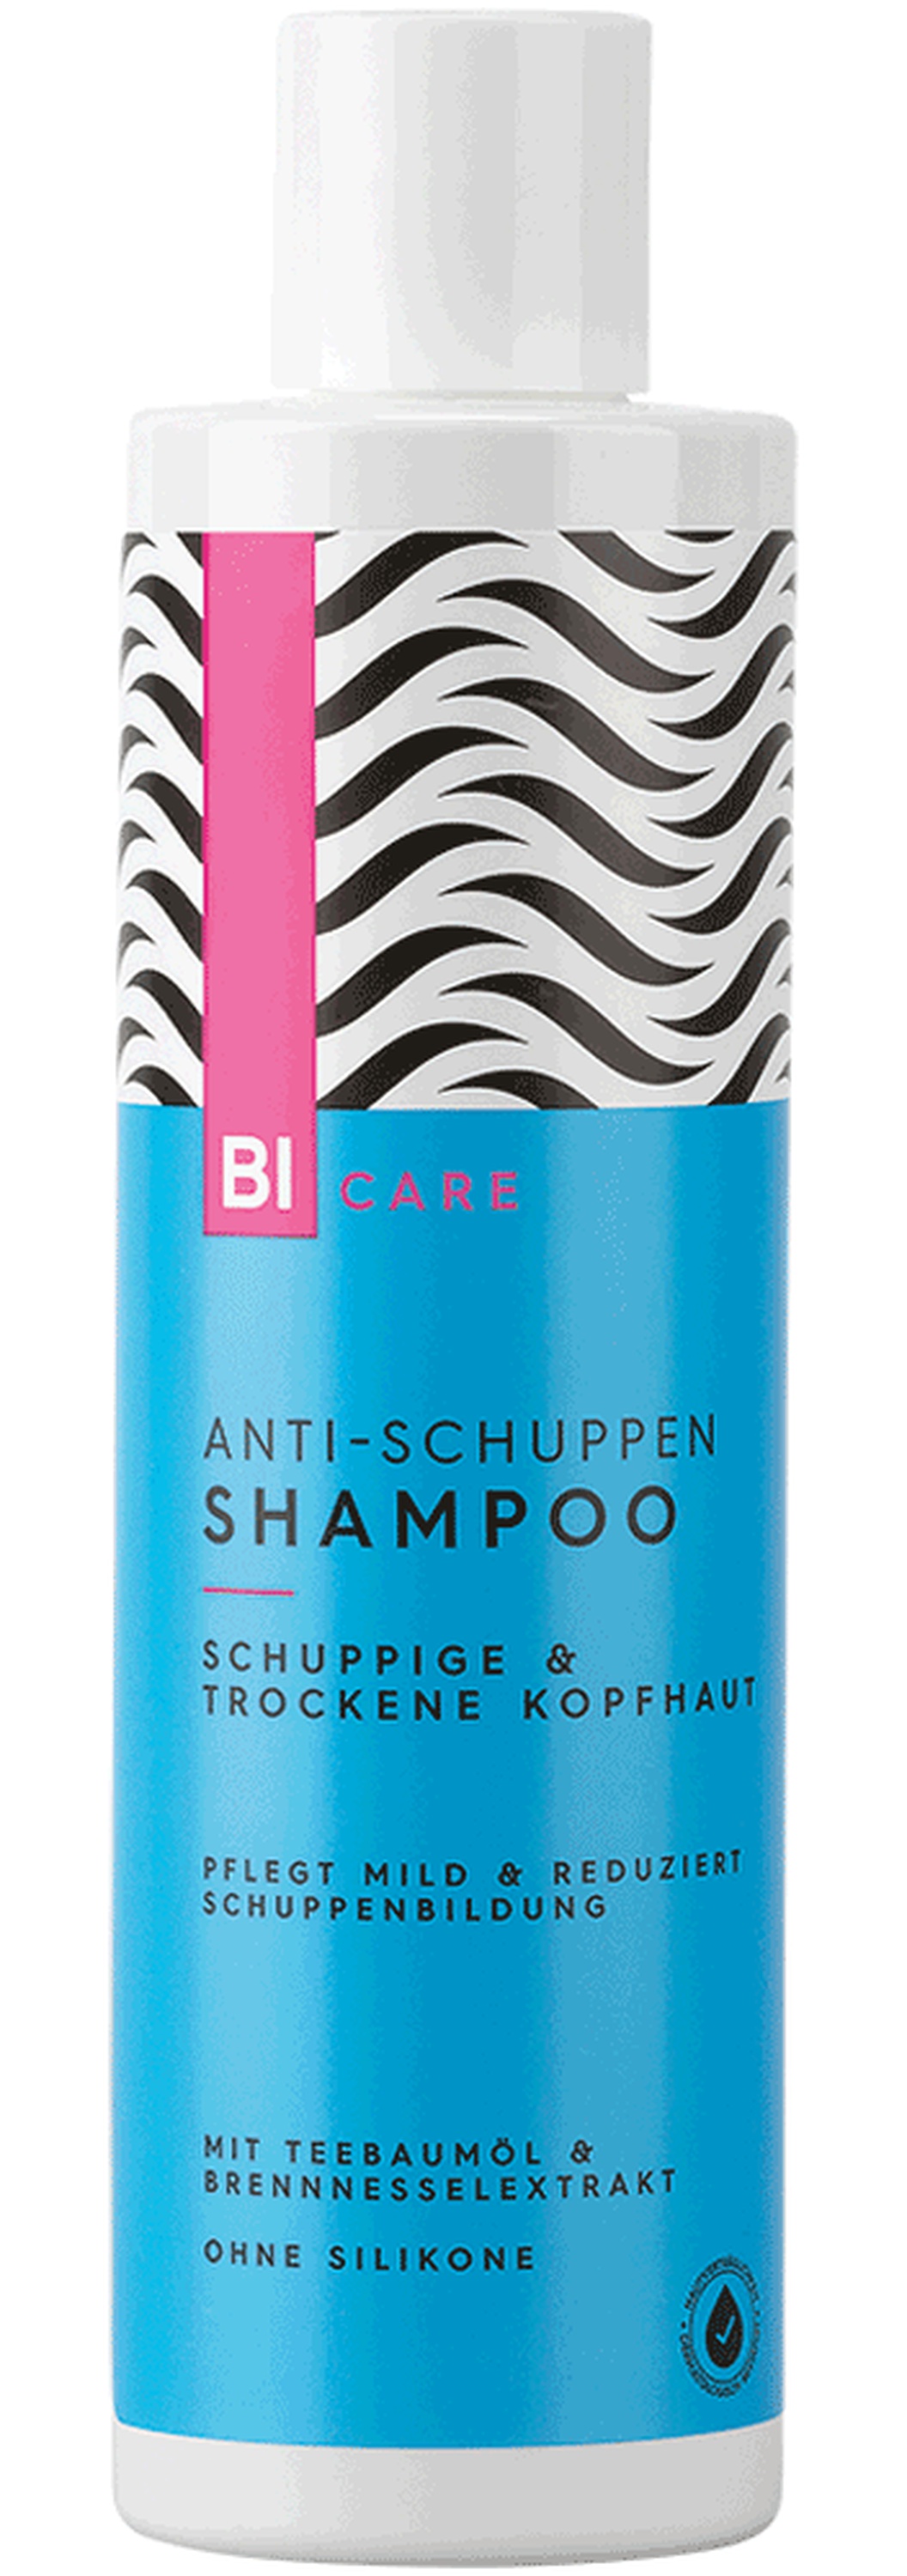 Bi Care Anti-Schuppen Shampoo